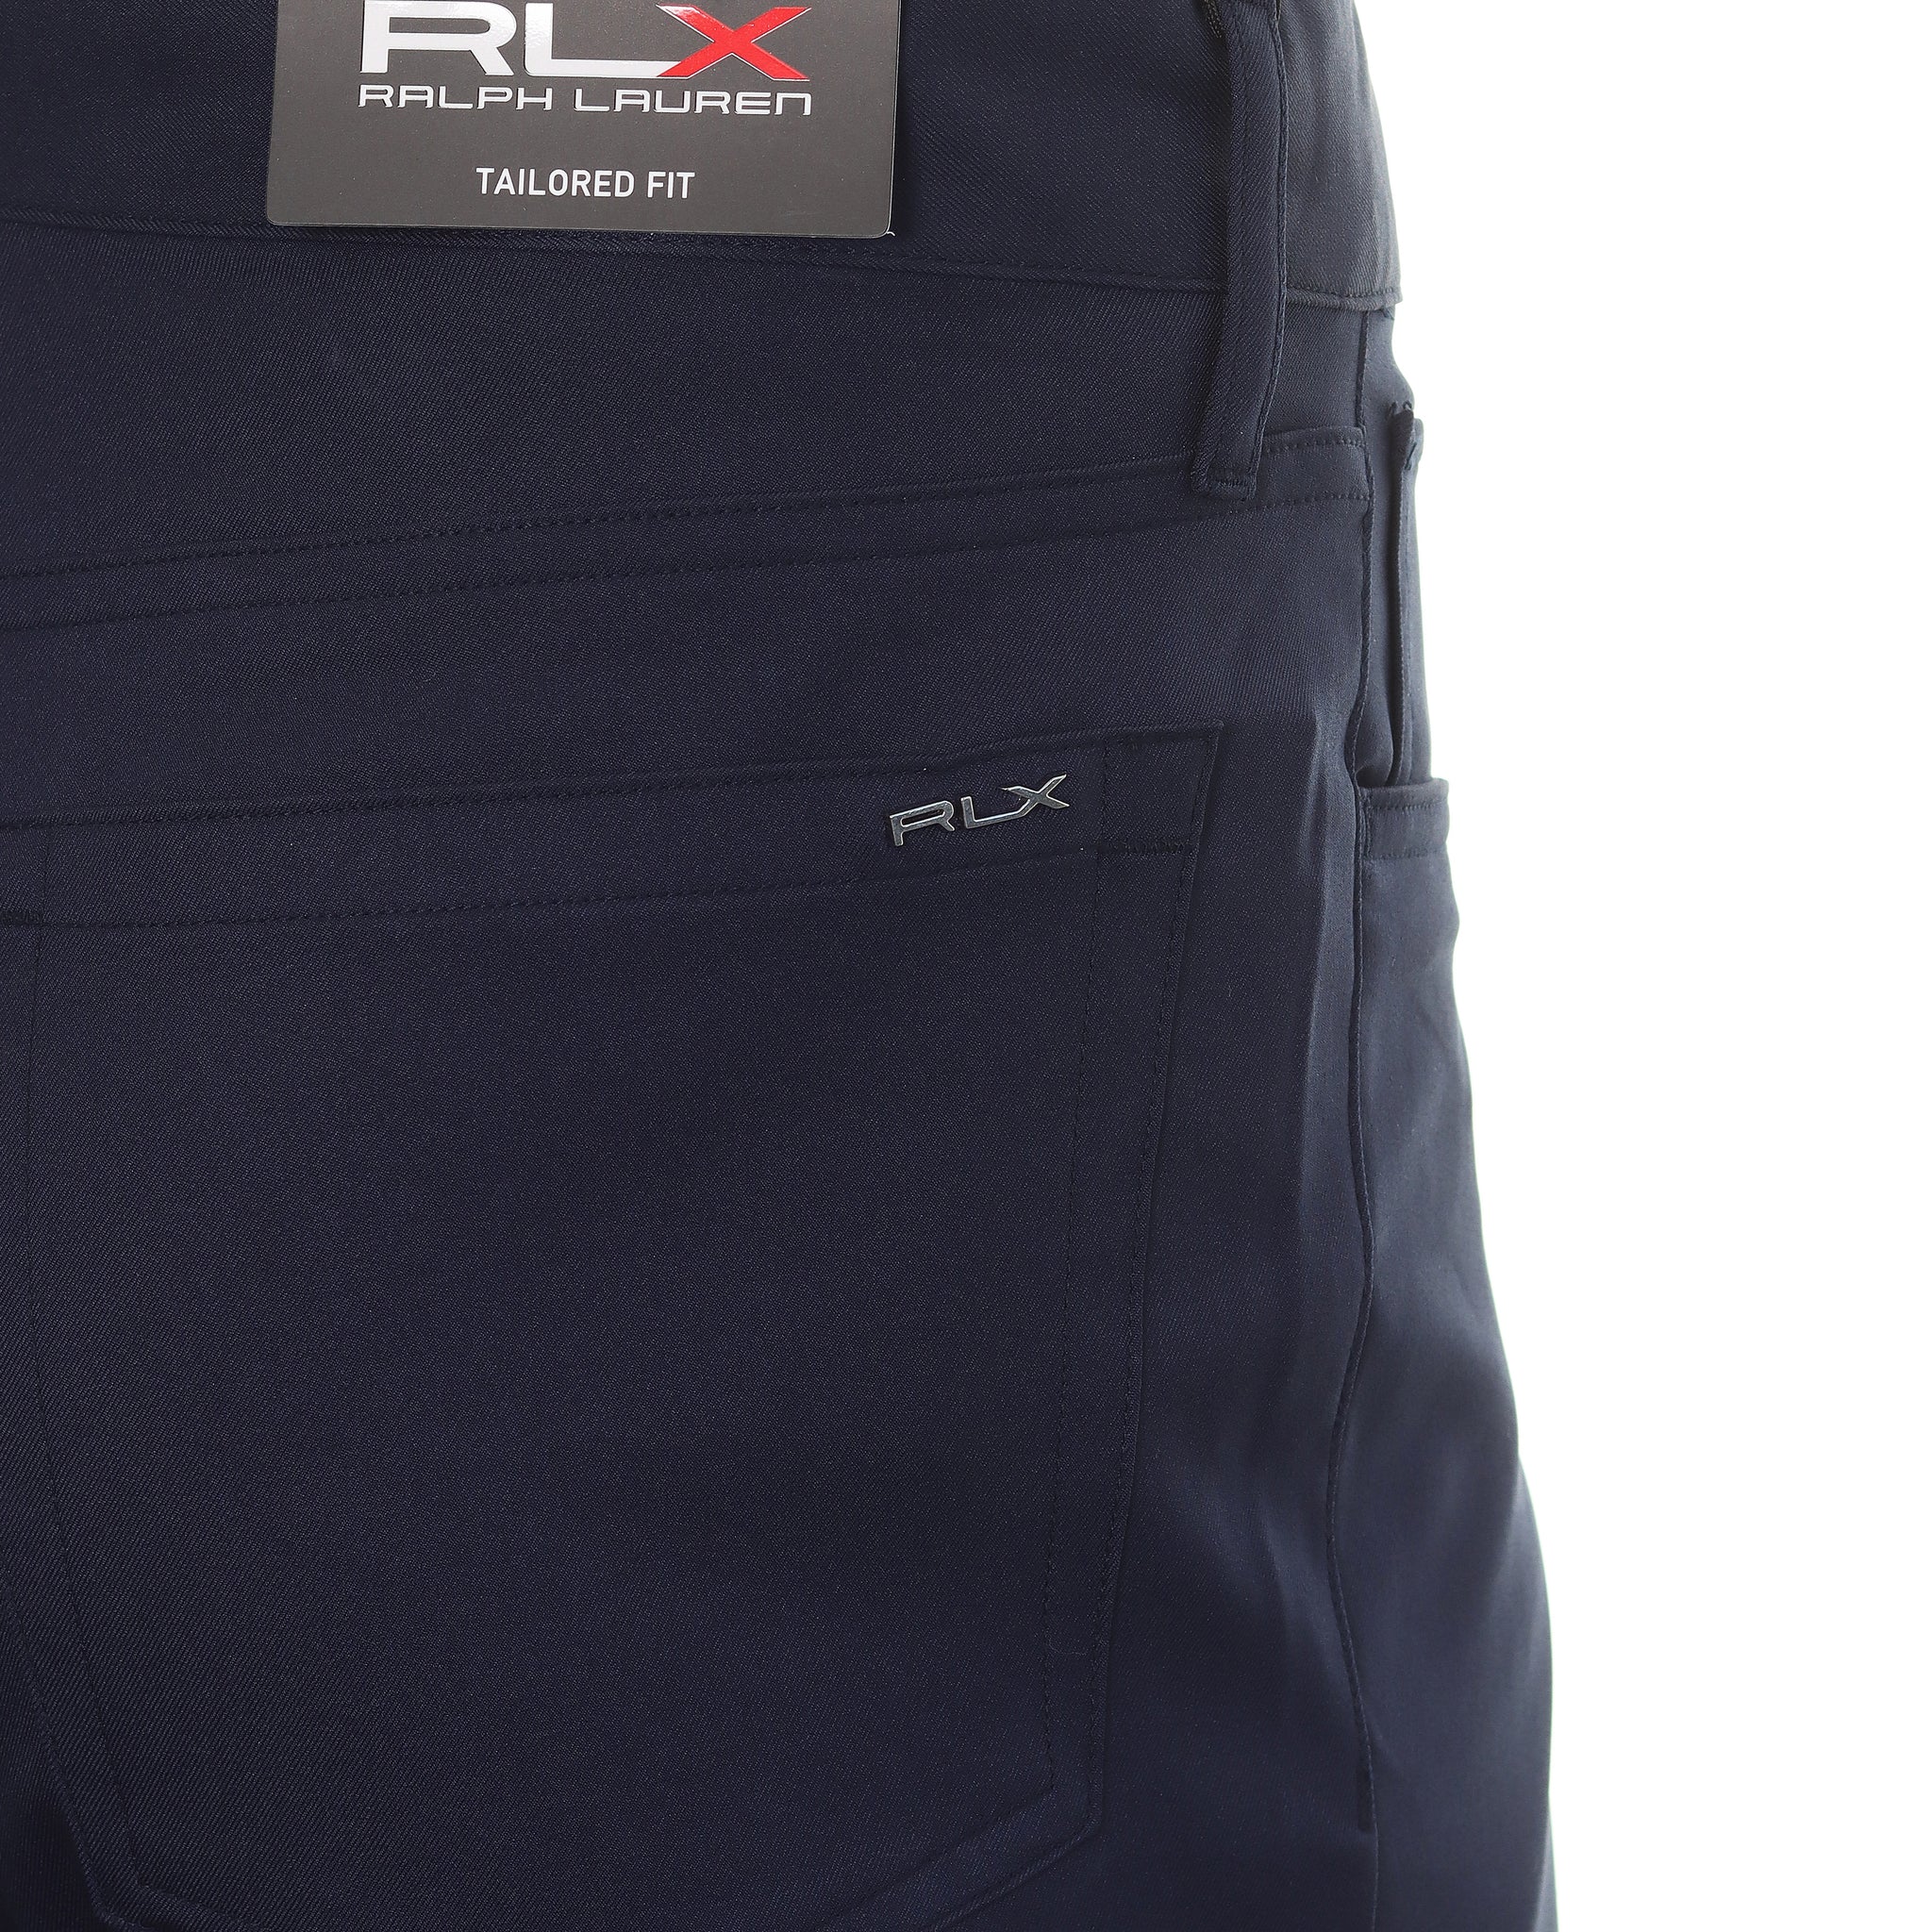 rlx-ralph-lauren-5-pocket-pants-785915682-refined-navy-001